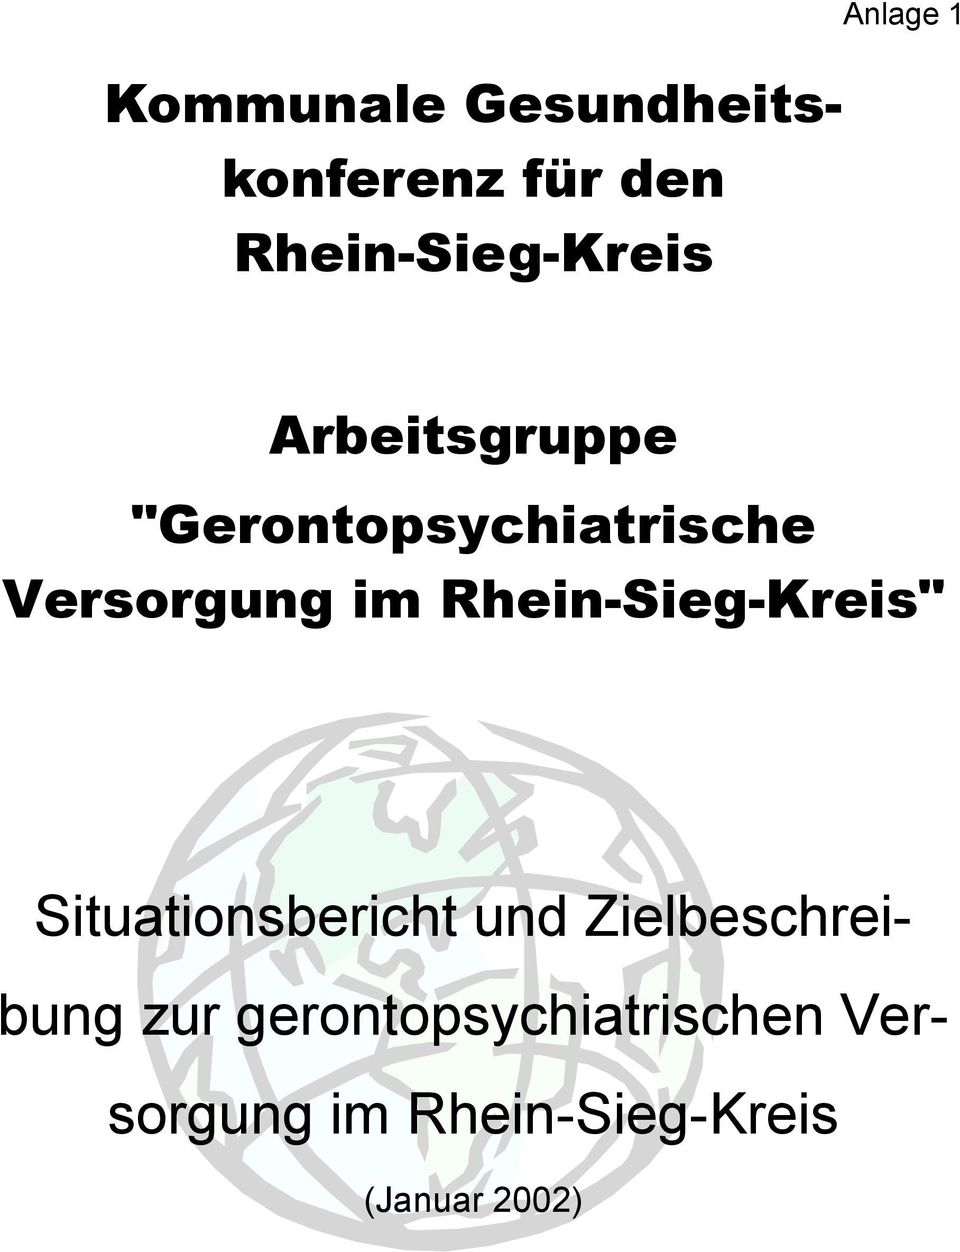 Rhein-Sieg-Kreis" Situationsbericht und Zielbeschreibung zur